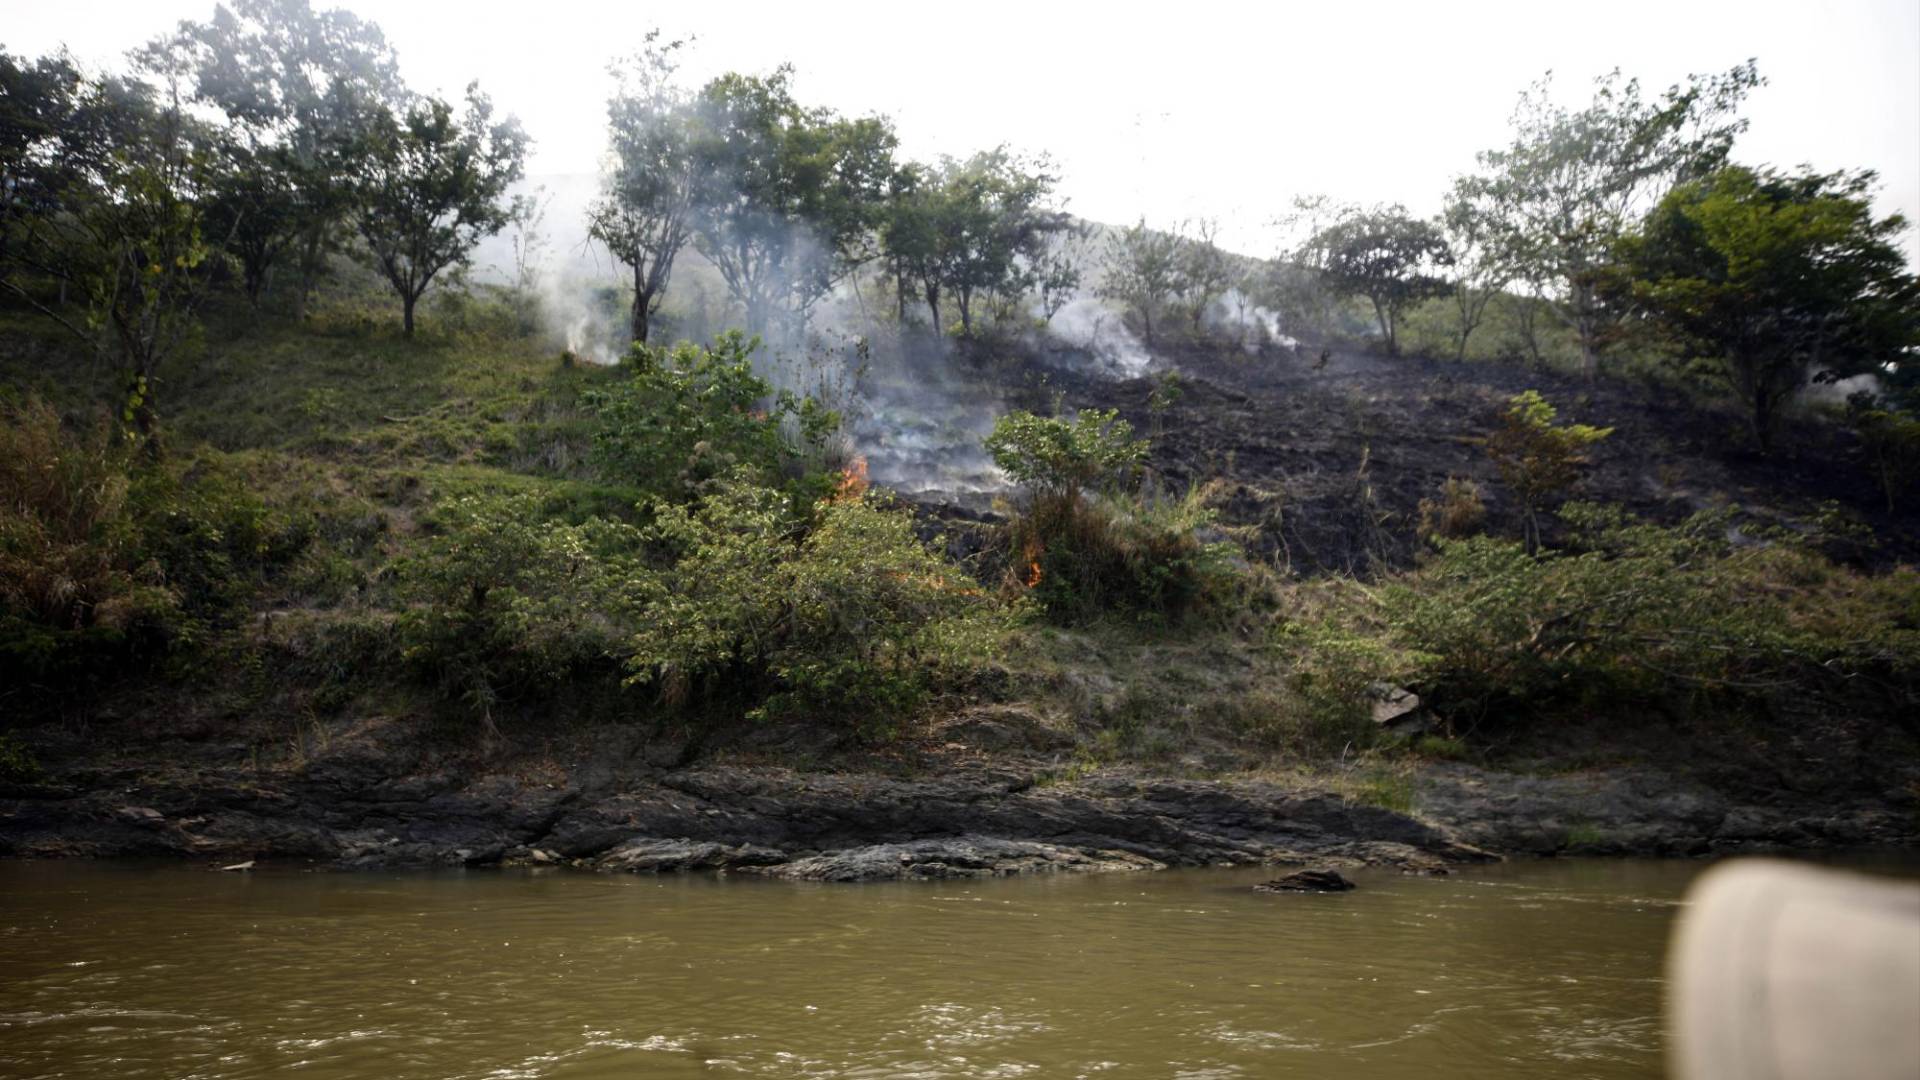 $!A lo largo del río Coco o Segovia los incendios forestales para el cambio de suelo de selva a potrero son constantes.